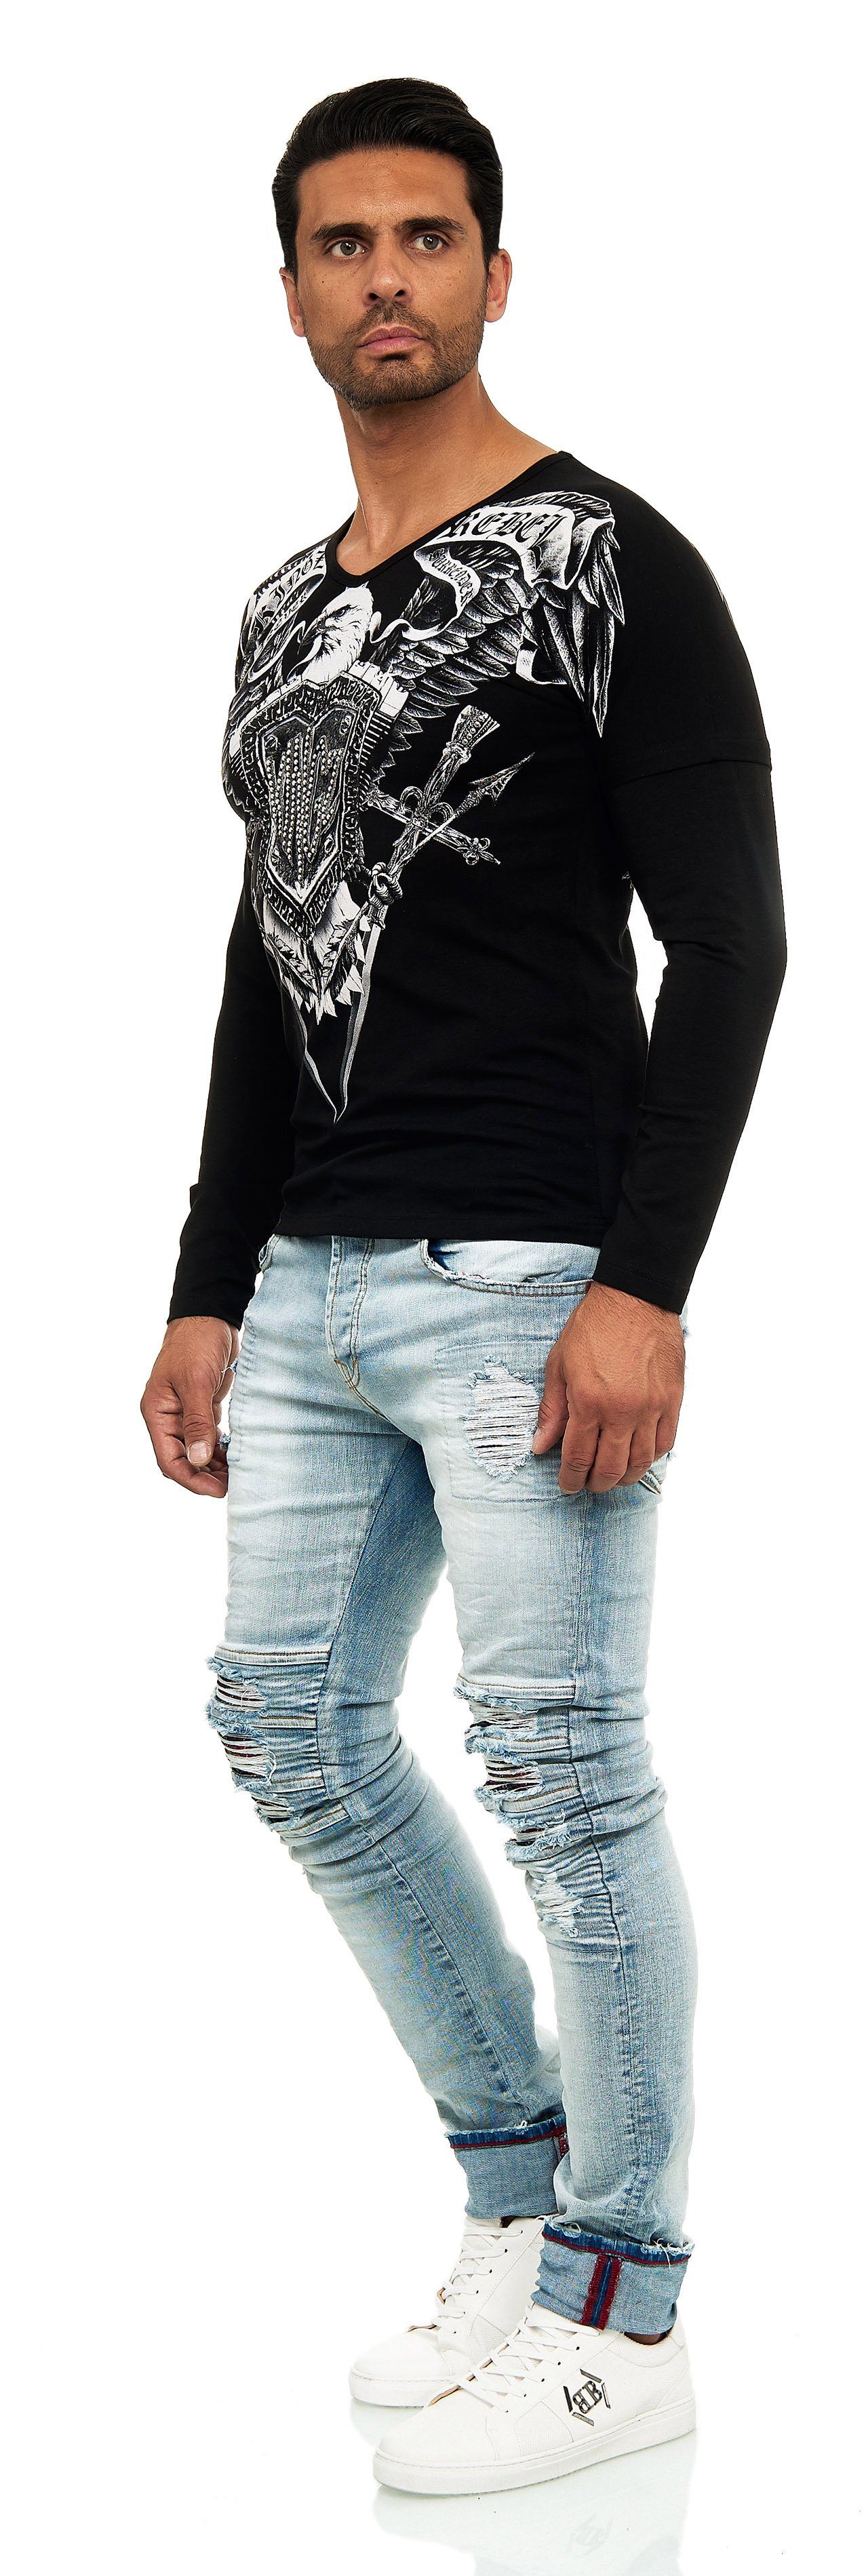 KINGZ Langarmshirt in Body-Fit mit Adler-Motiv schwarz-silberfarben